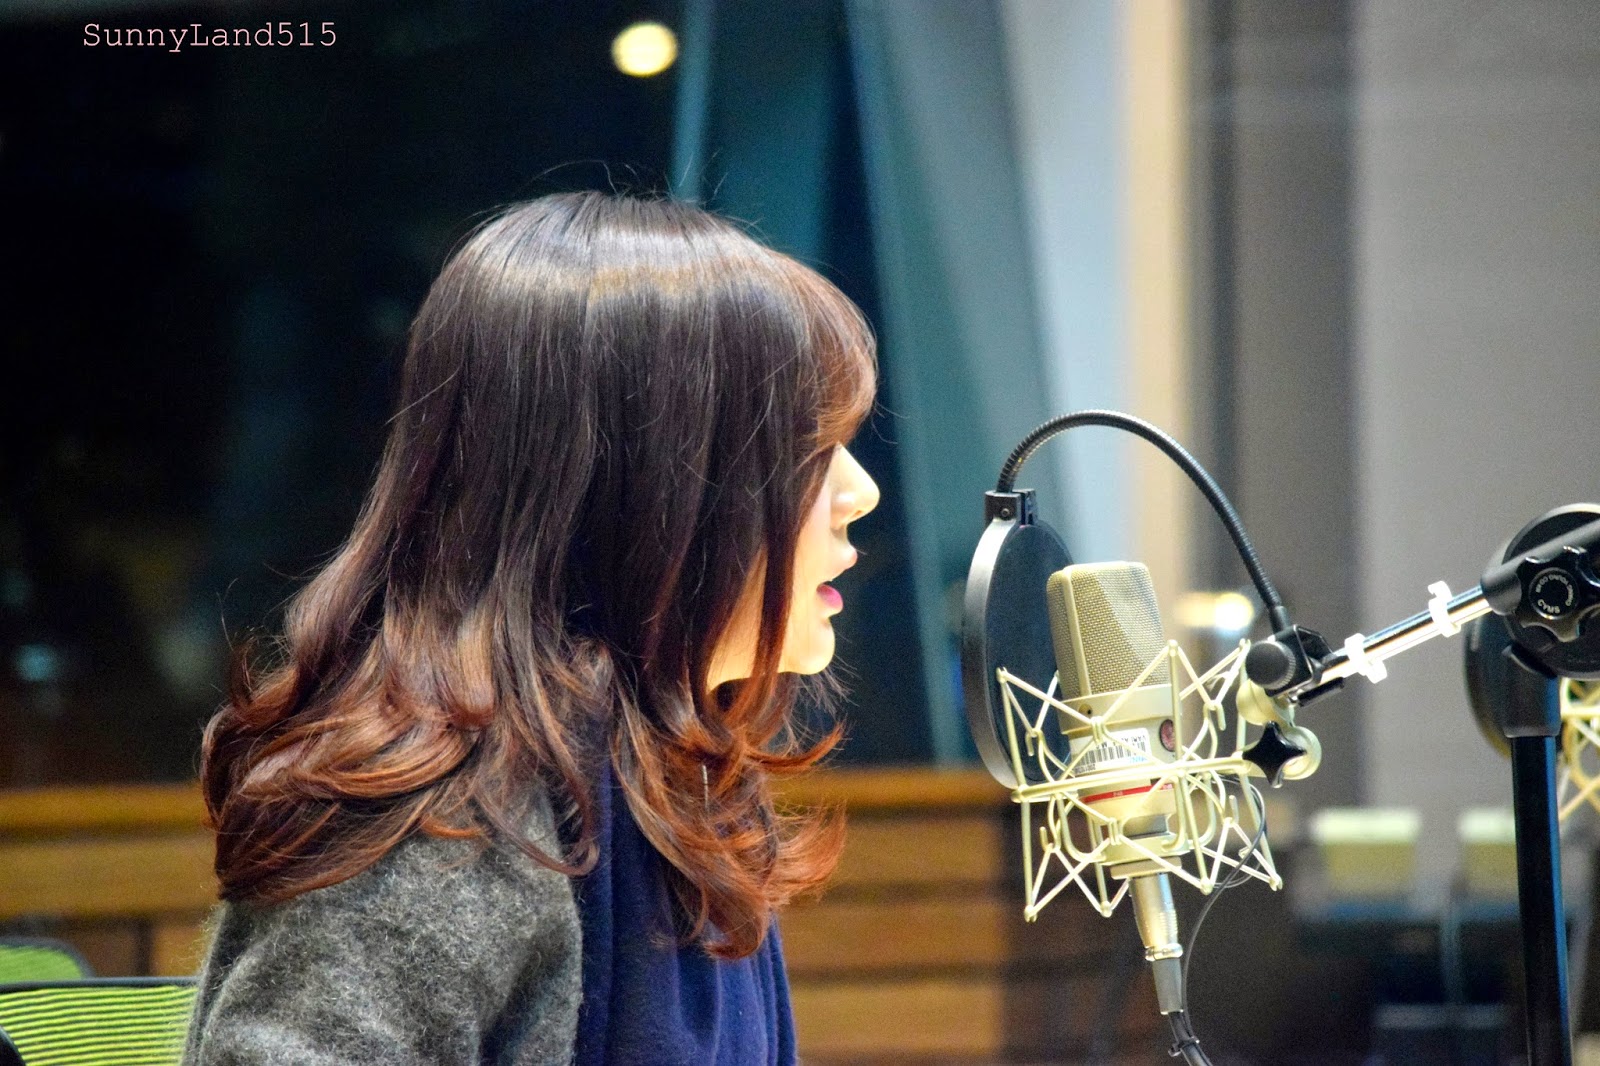 [OTHER][06-02-2015]Hình ảnh mới nhất từ DJ Sunny tại Radio MBC FM4U - "FM Date" - Page 10 DSC_0338_Fotor